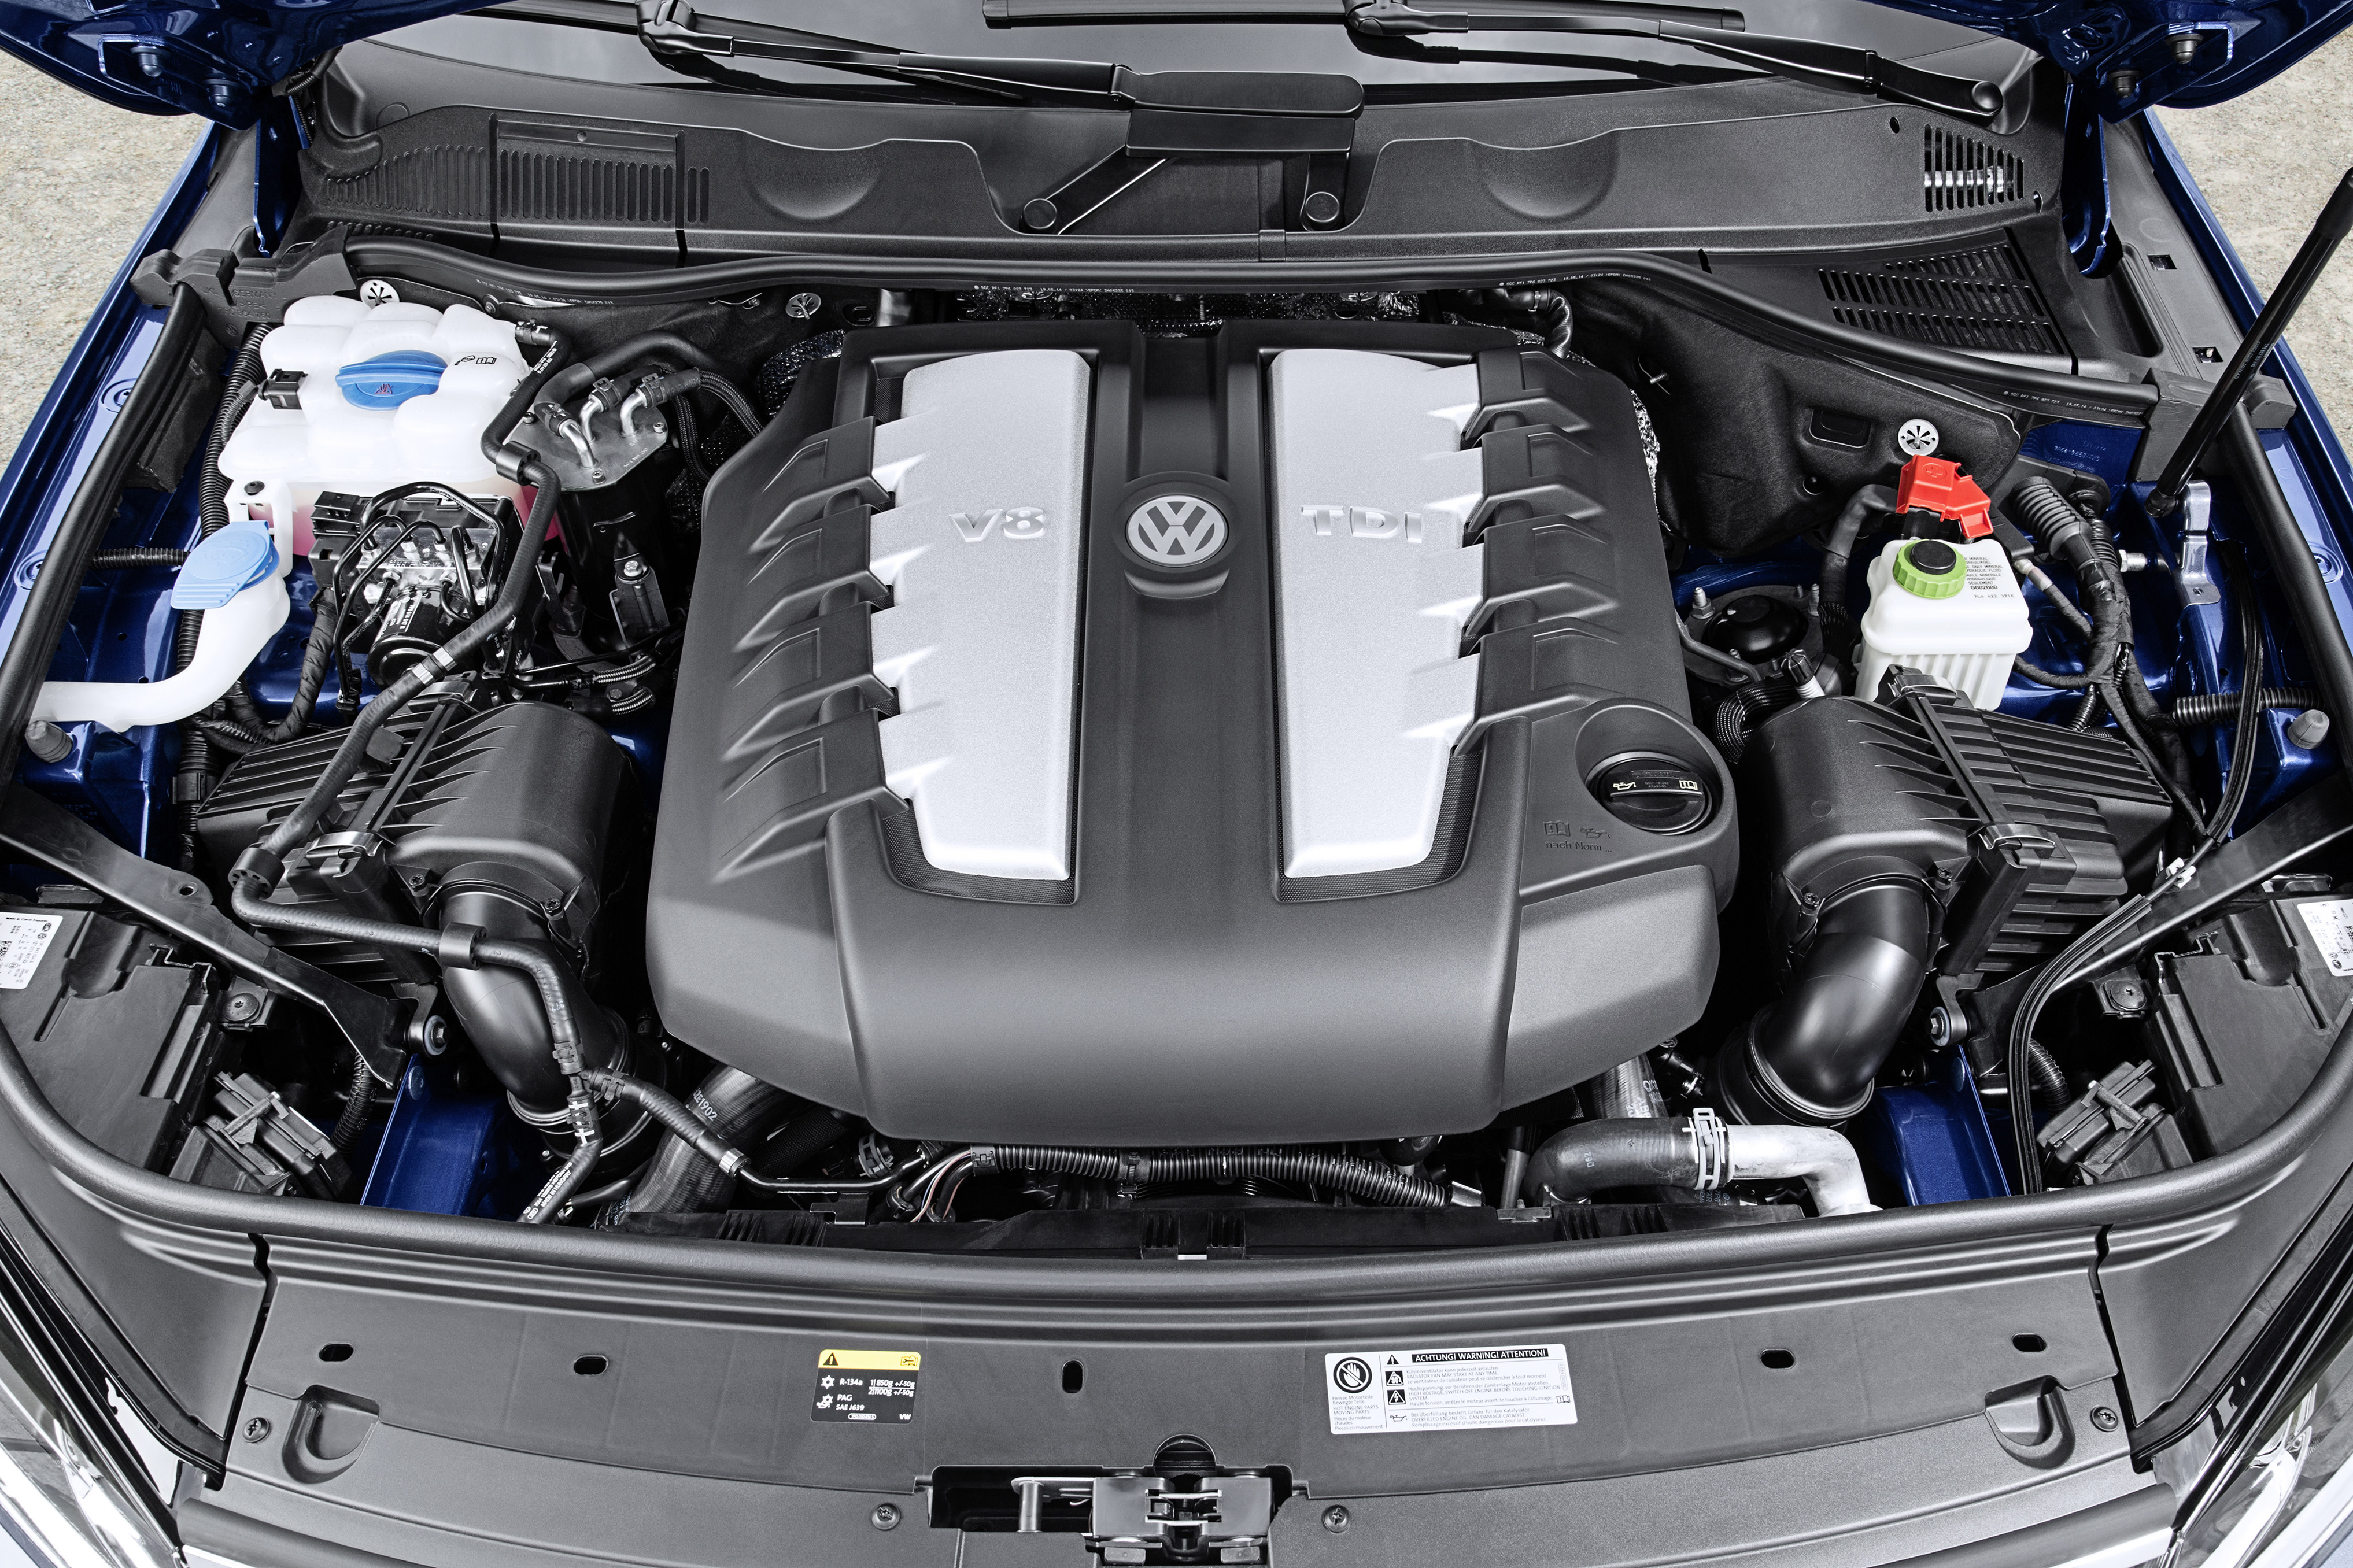 Дизель 249 л с. Двигатель Volkswagen Touareg 4 и 2. Двигатель Фольксваген Туарег 3.0 дизель. Туарег 2014 под капотом. Фольксваген Туарег под капотом.